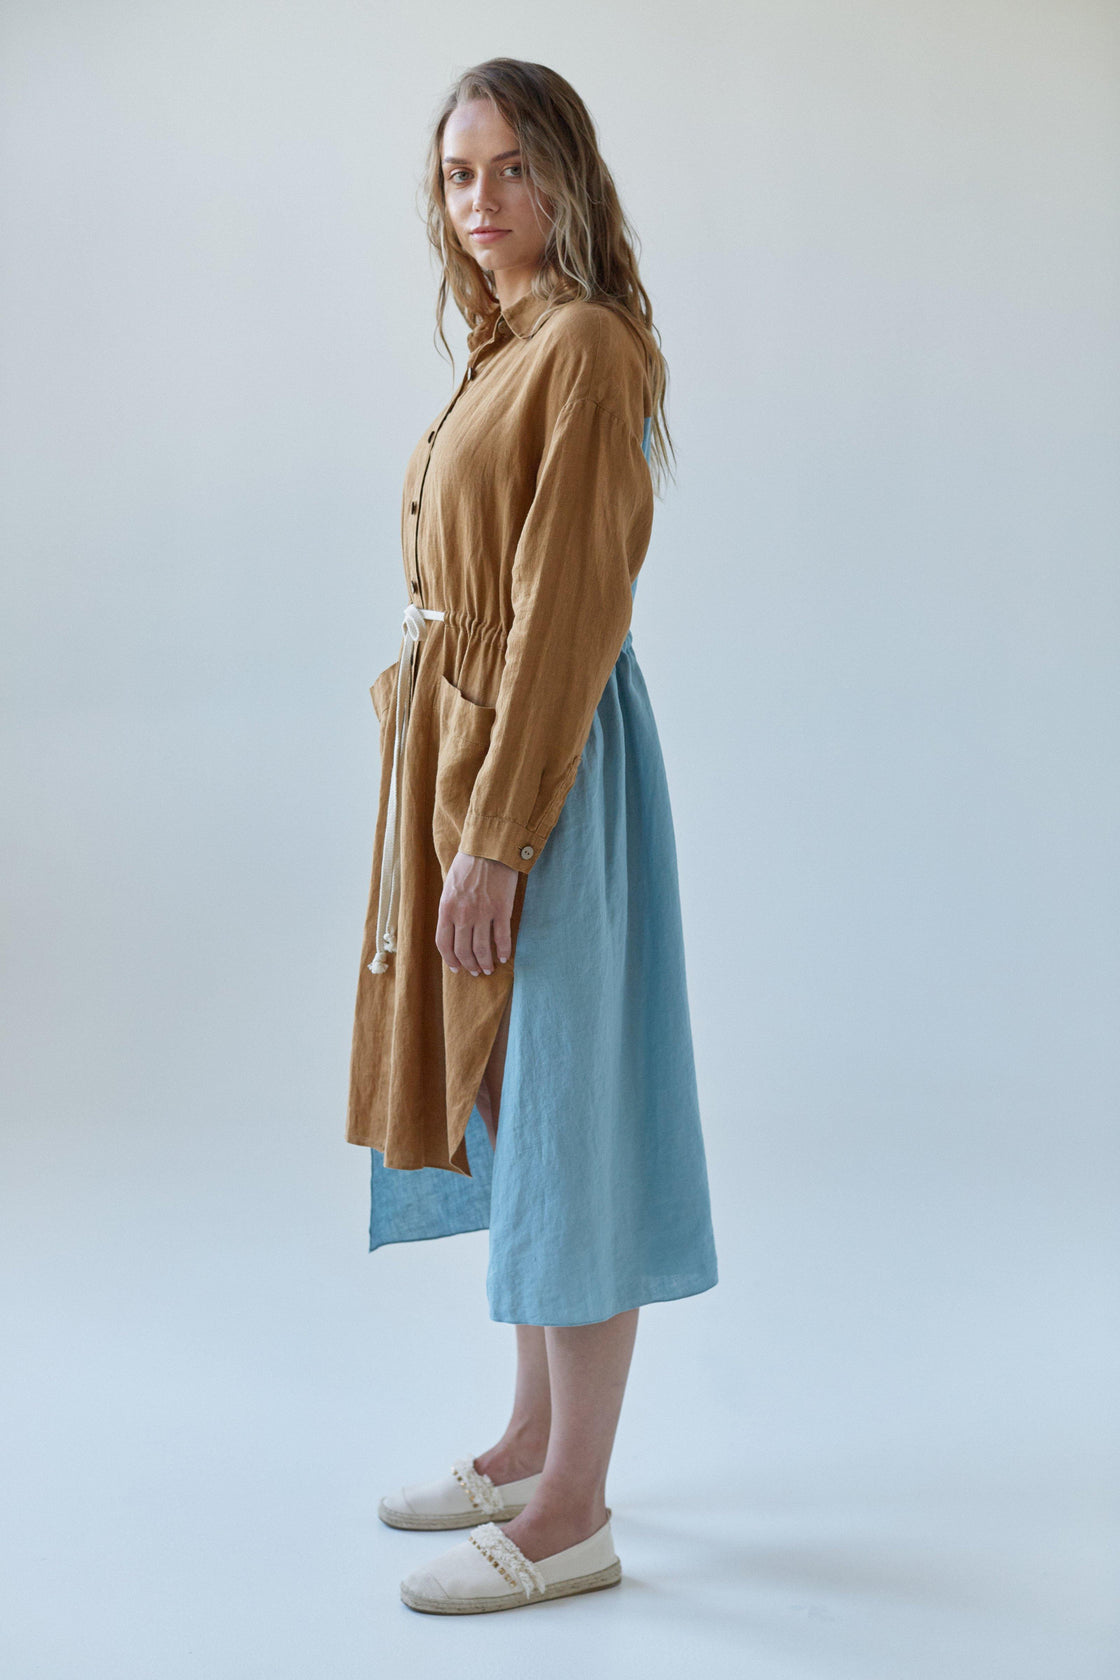 bicolor linen dress - Manufacture de Lin